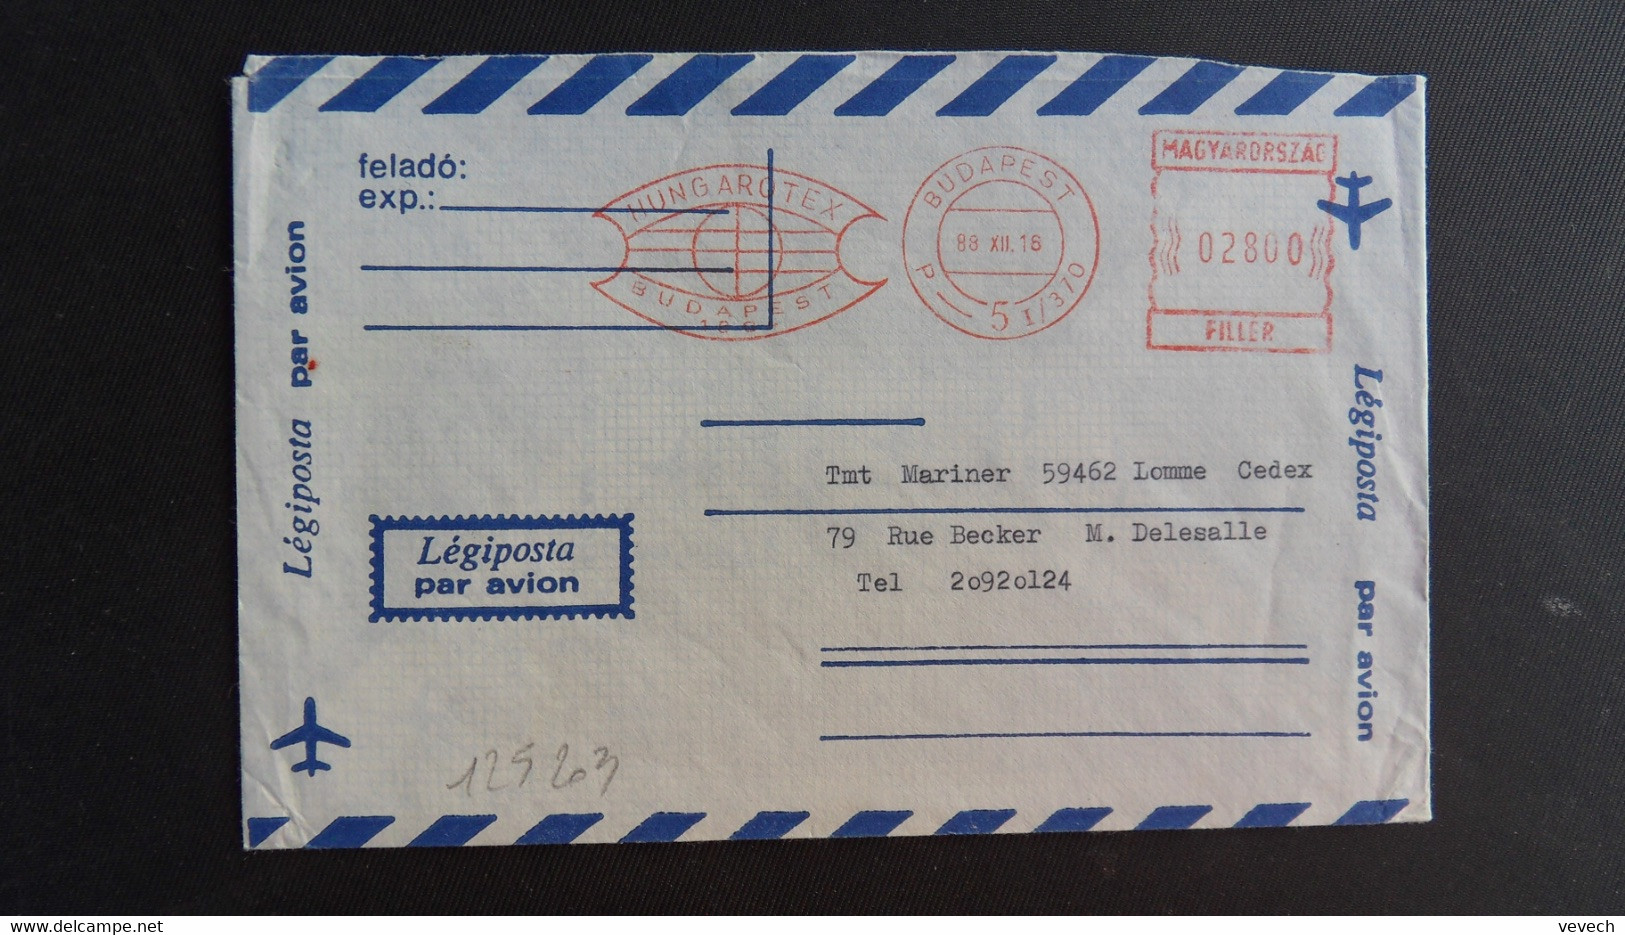 LETTRE Par Avion Pour La FRANCE EMA à 02800 Du 89 XII 16 BUDAPEST + HUNGAROTEX - Briefe U. Dokumente